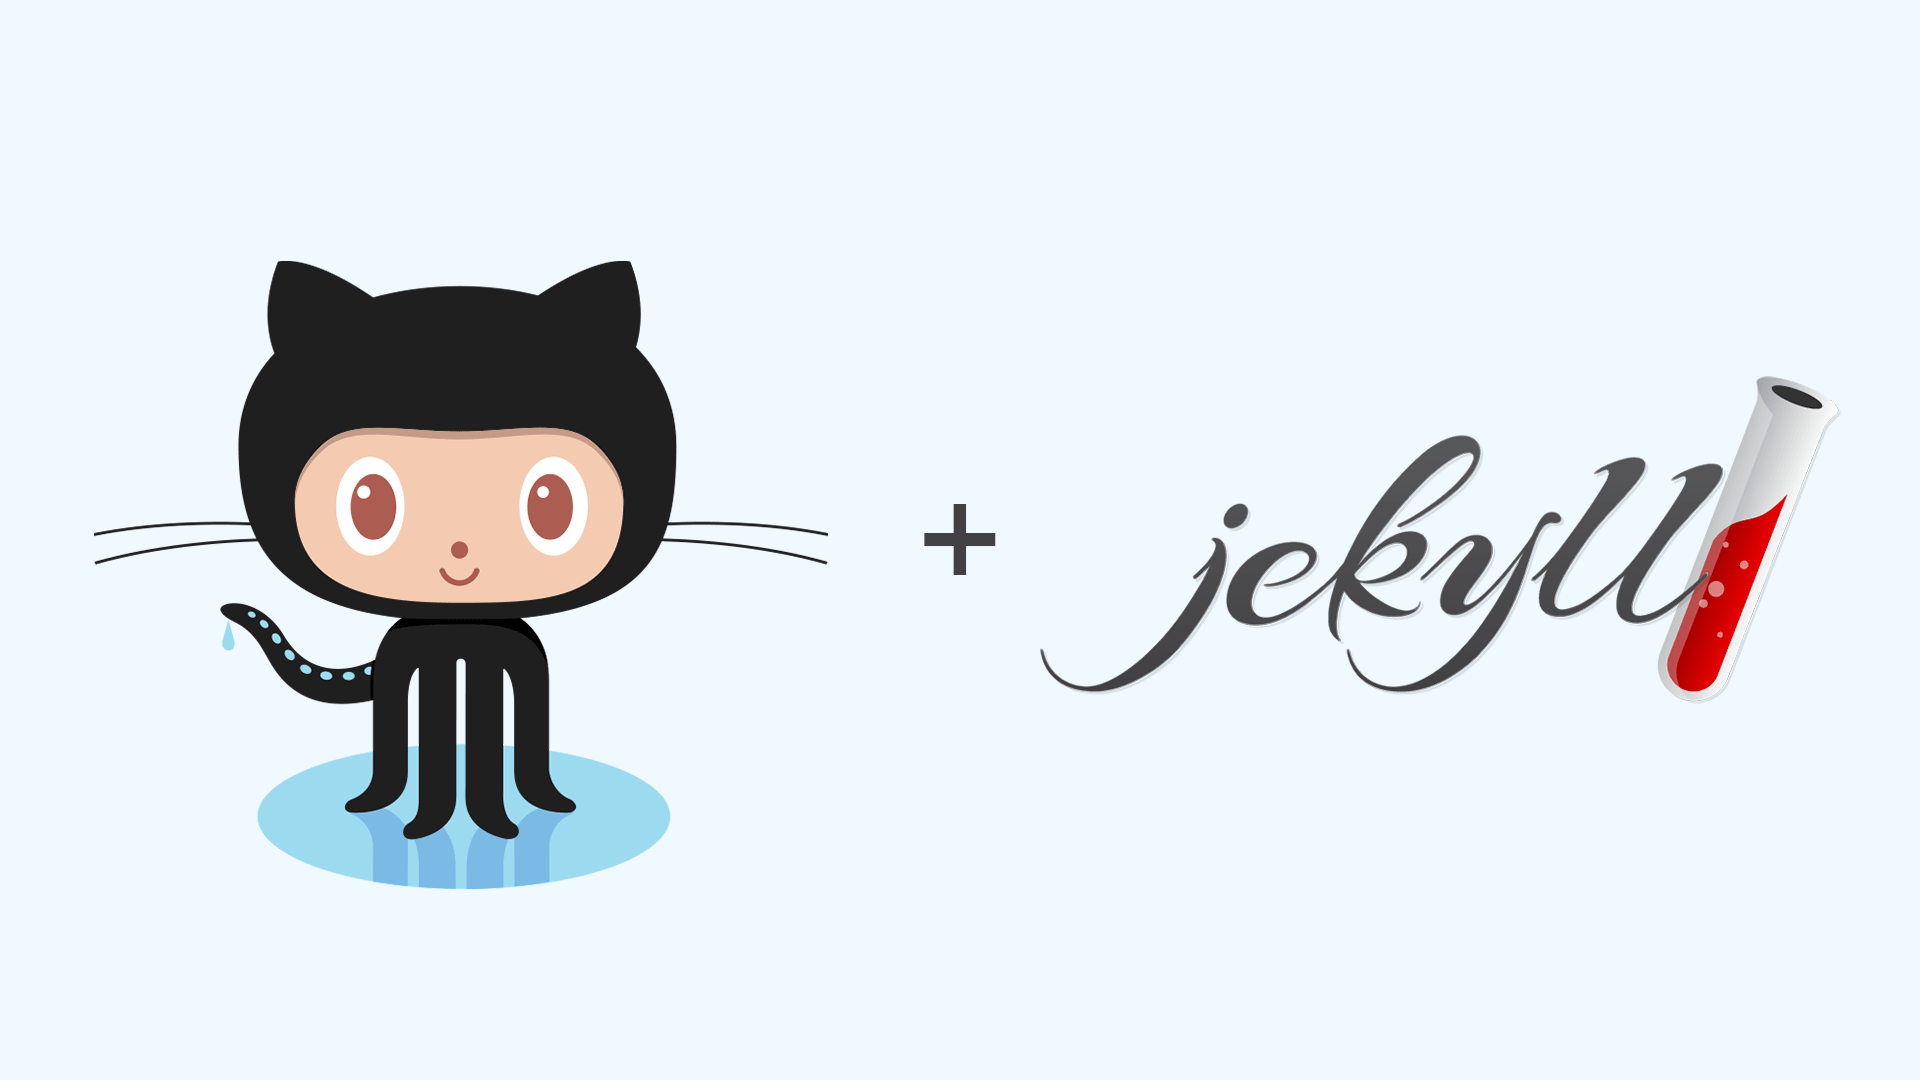 Jekyll and GitHub logos